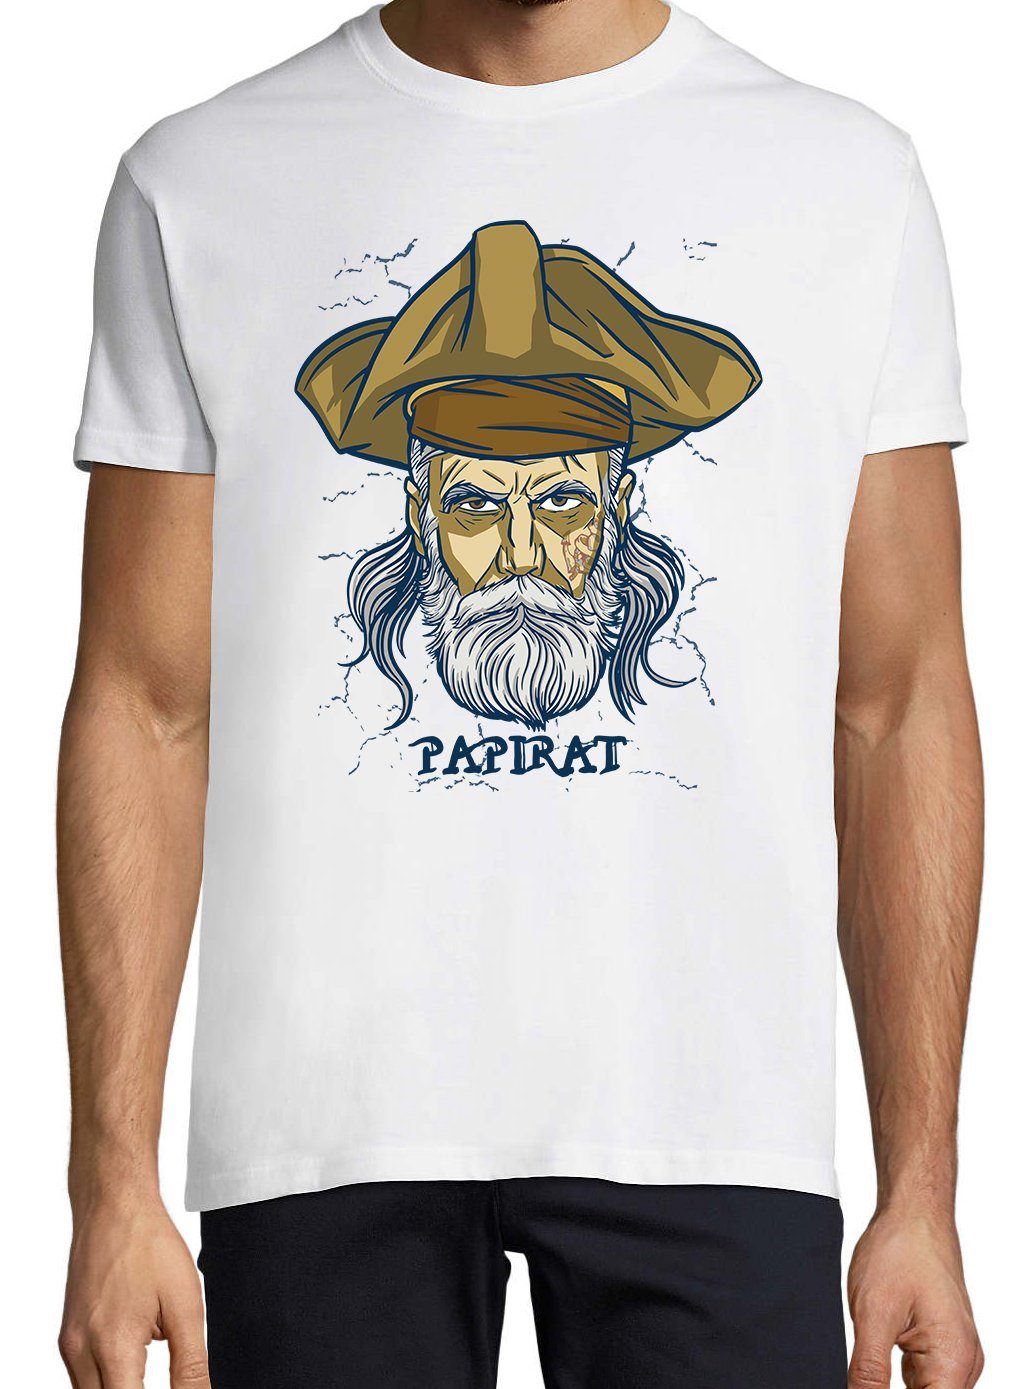 Weiß T-Shirt trendigem Papirat Shirt Papa Piraten Frontprint Herren Youth Designz mit